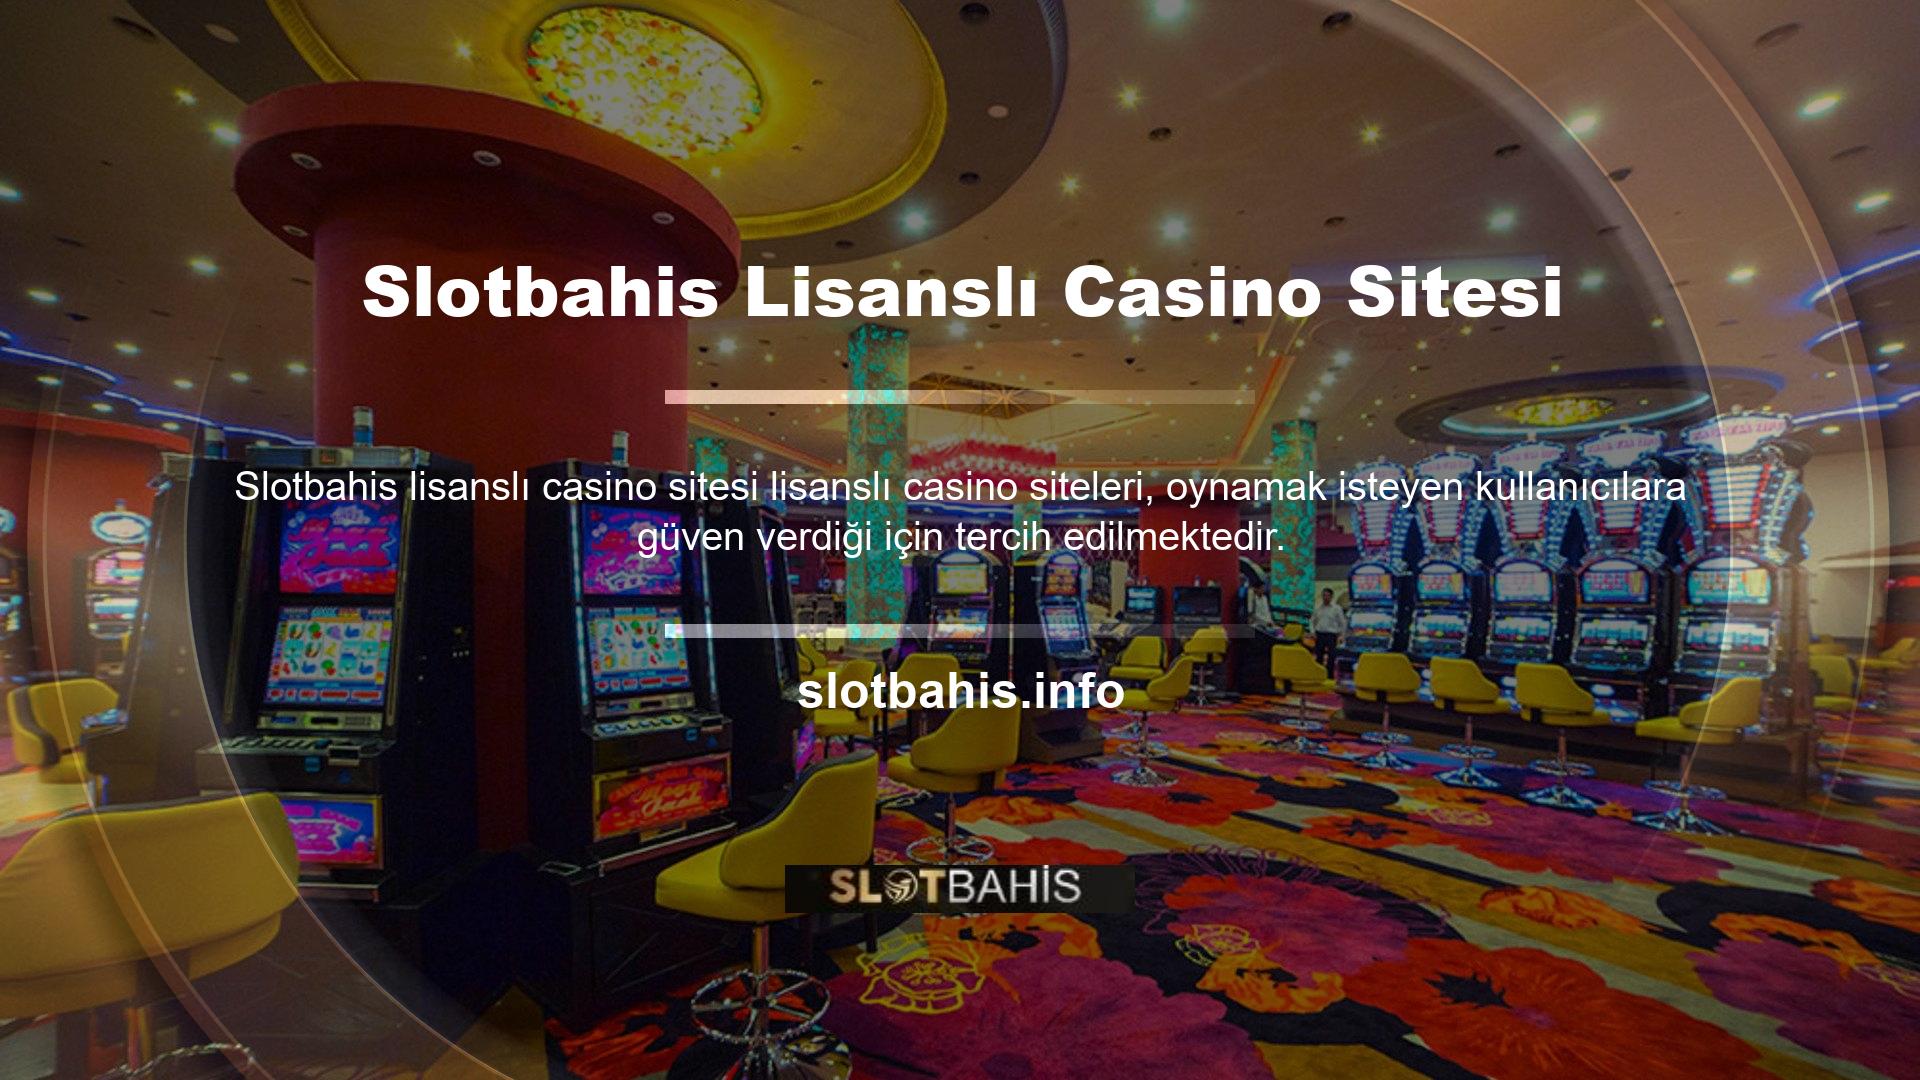 Casino sitesi, hızlı bir şekilde bağlanabileceğiniz ve casino heyecanını paylaşabileceğiniz bir maceradır